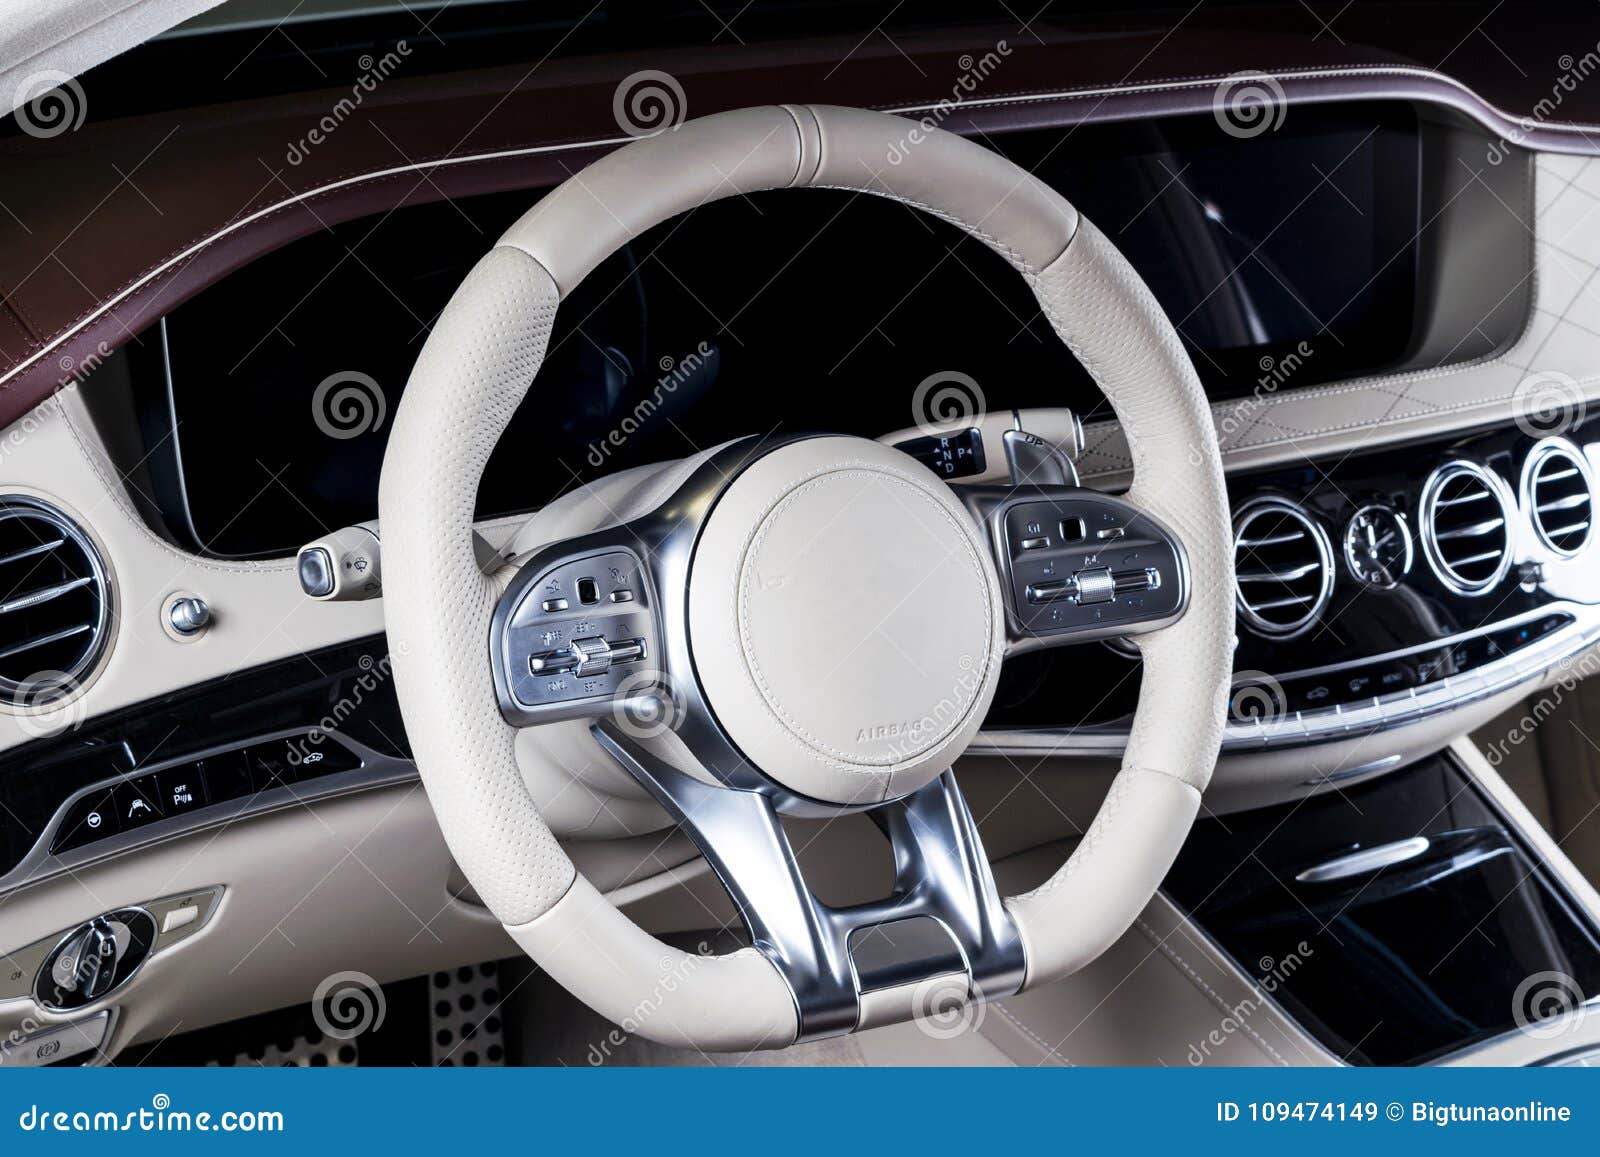 Modern Luxury Car Inside Interior Of Prestige Modern Car